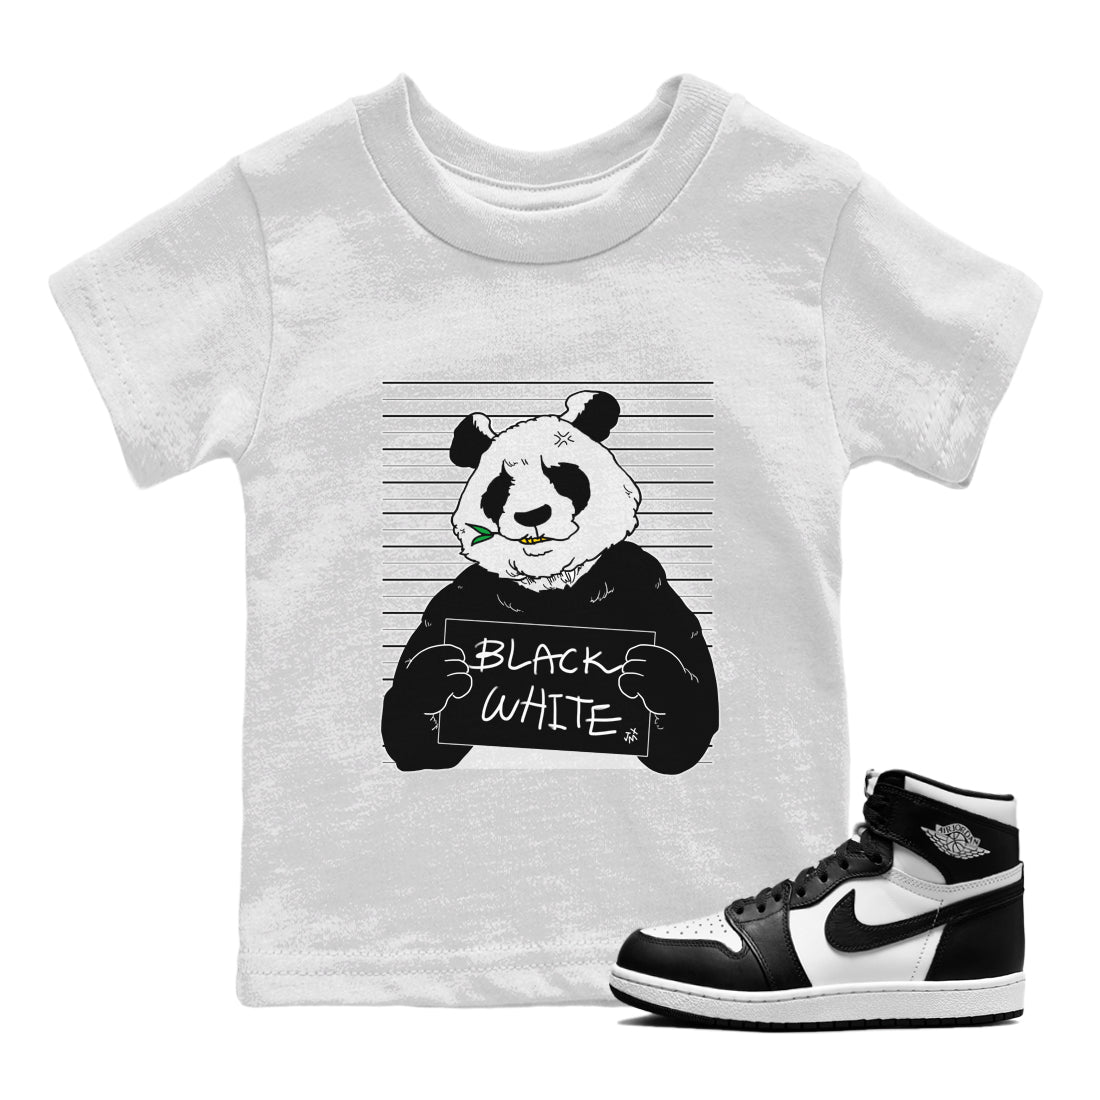 Jordan 1 Black White Sneaker Match Tees Mugshot Sneaker Tees Jordan 1 Black White Sneaker Release Tees Kids Shirts